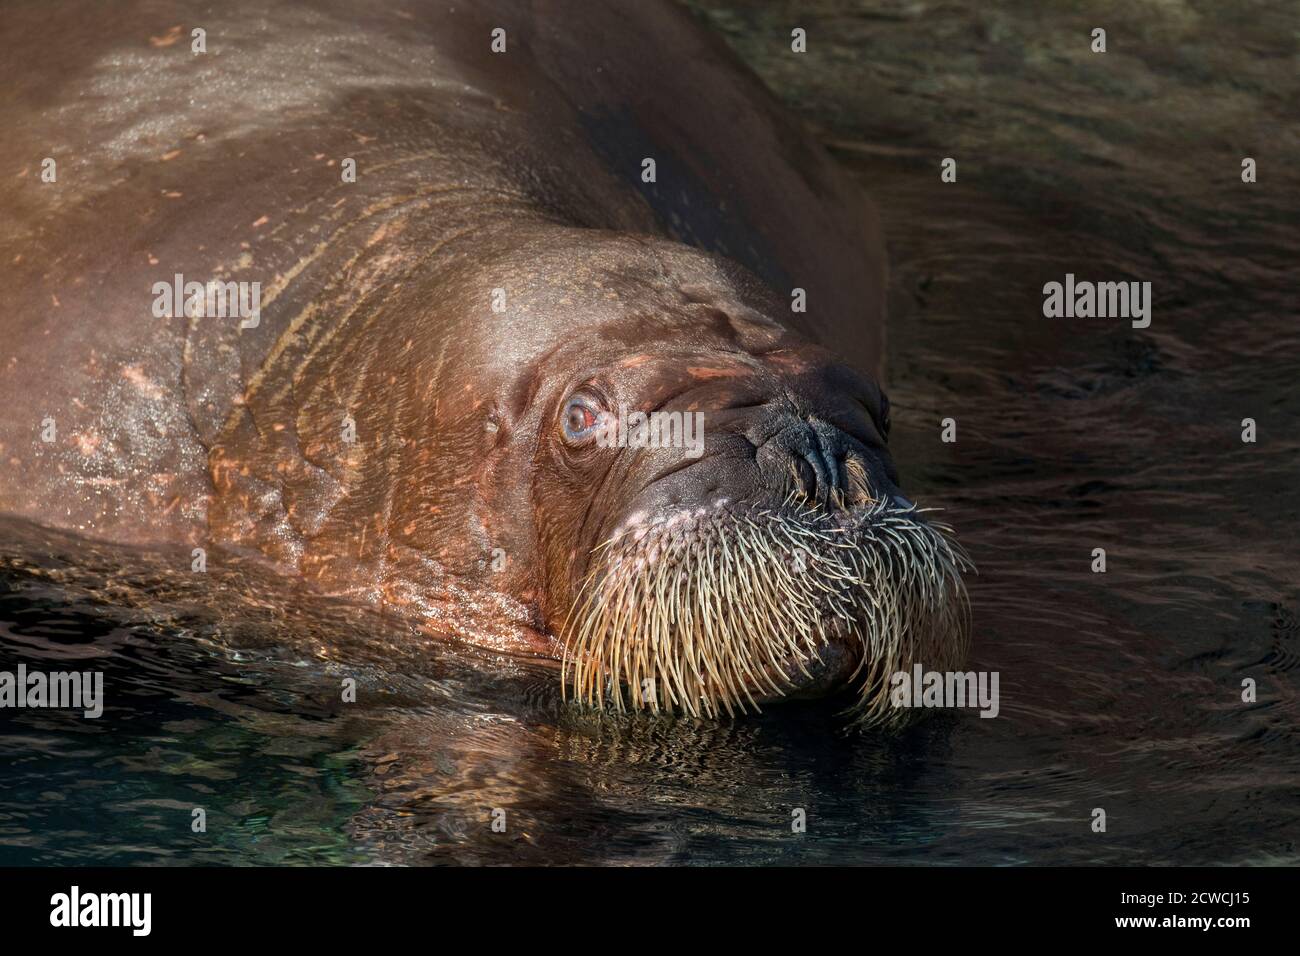 Walross (Odobenus rosmarus) im Wasser schwimmen, Nahaufnahme des Kopfes zeigt Schnurrhaare / Vibrissae Stockfoto